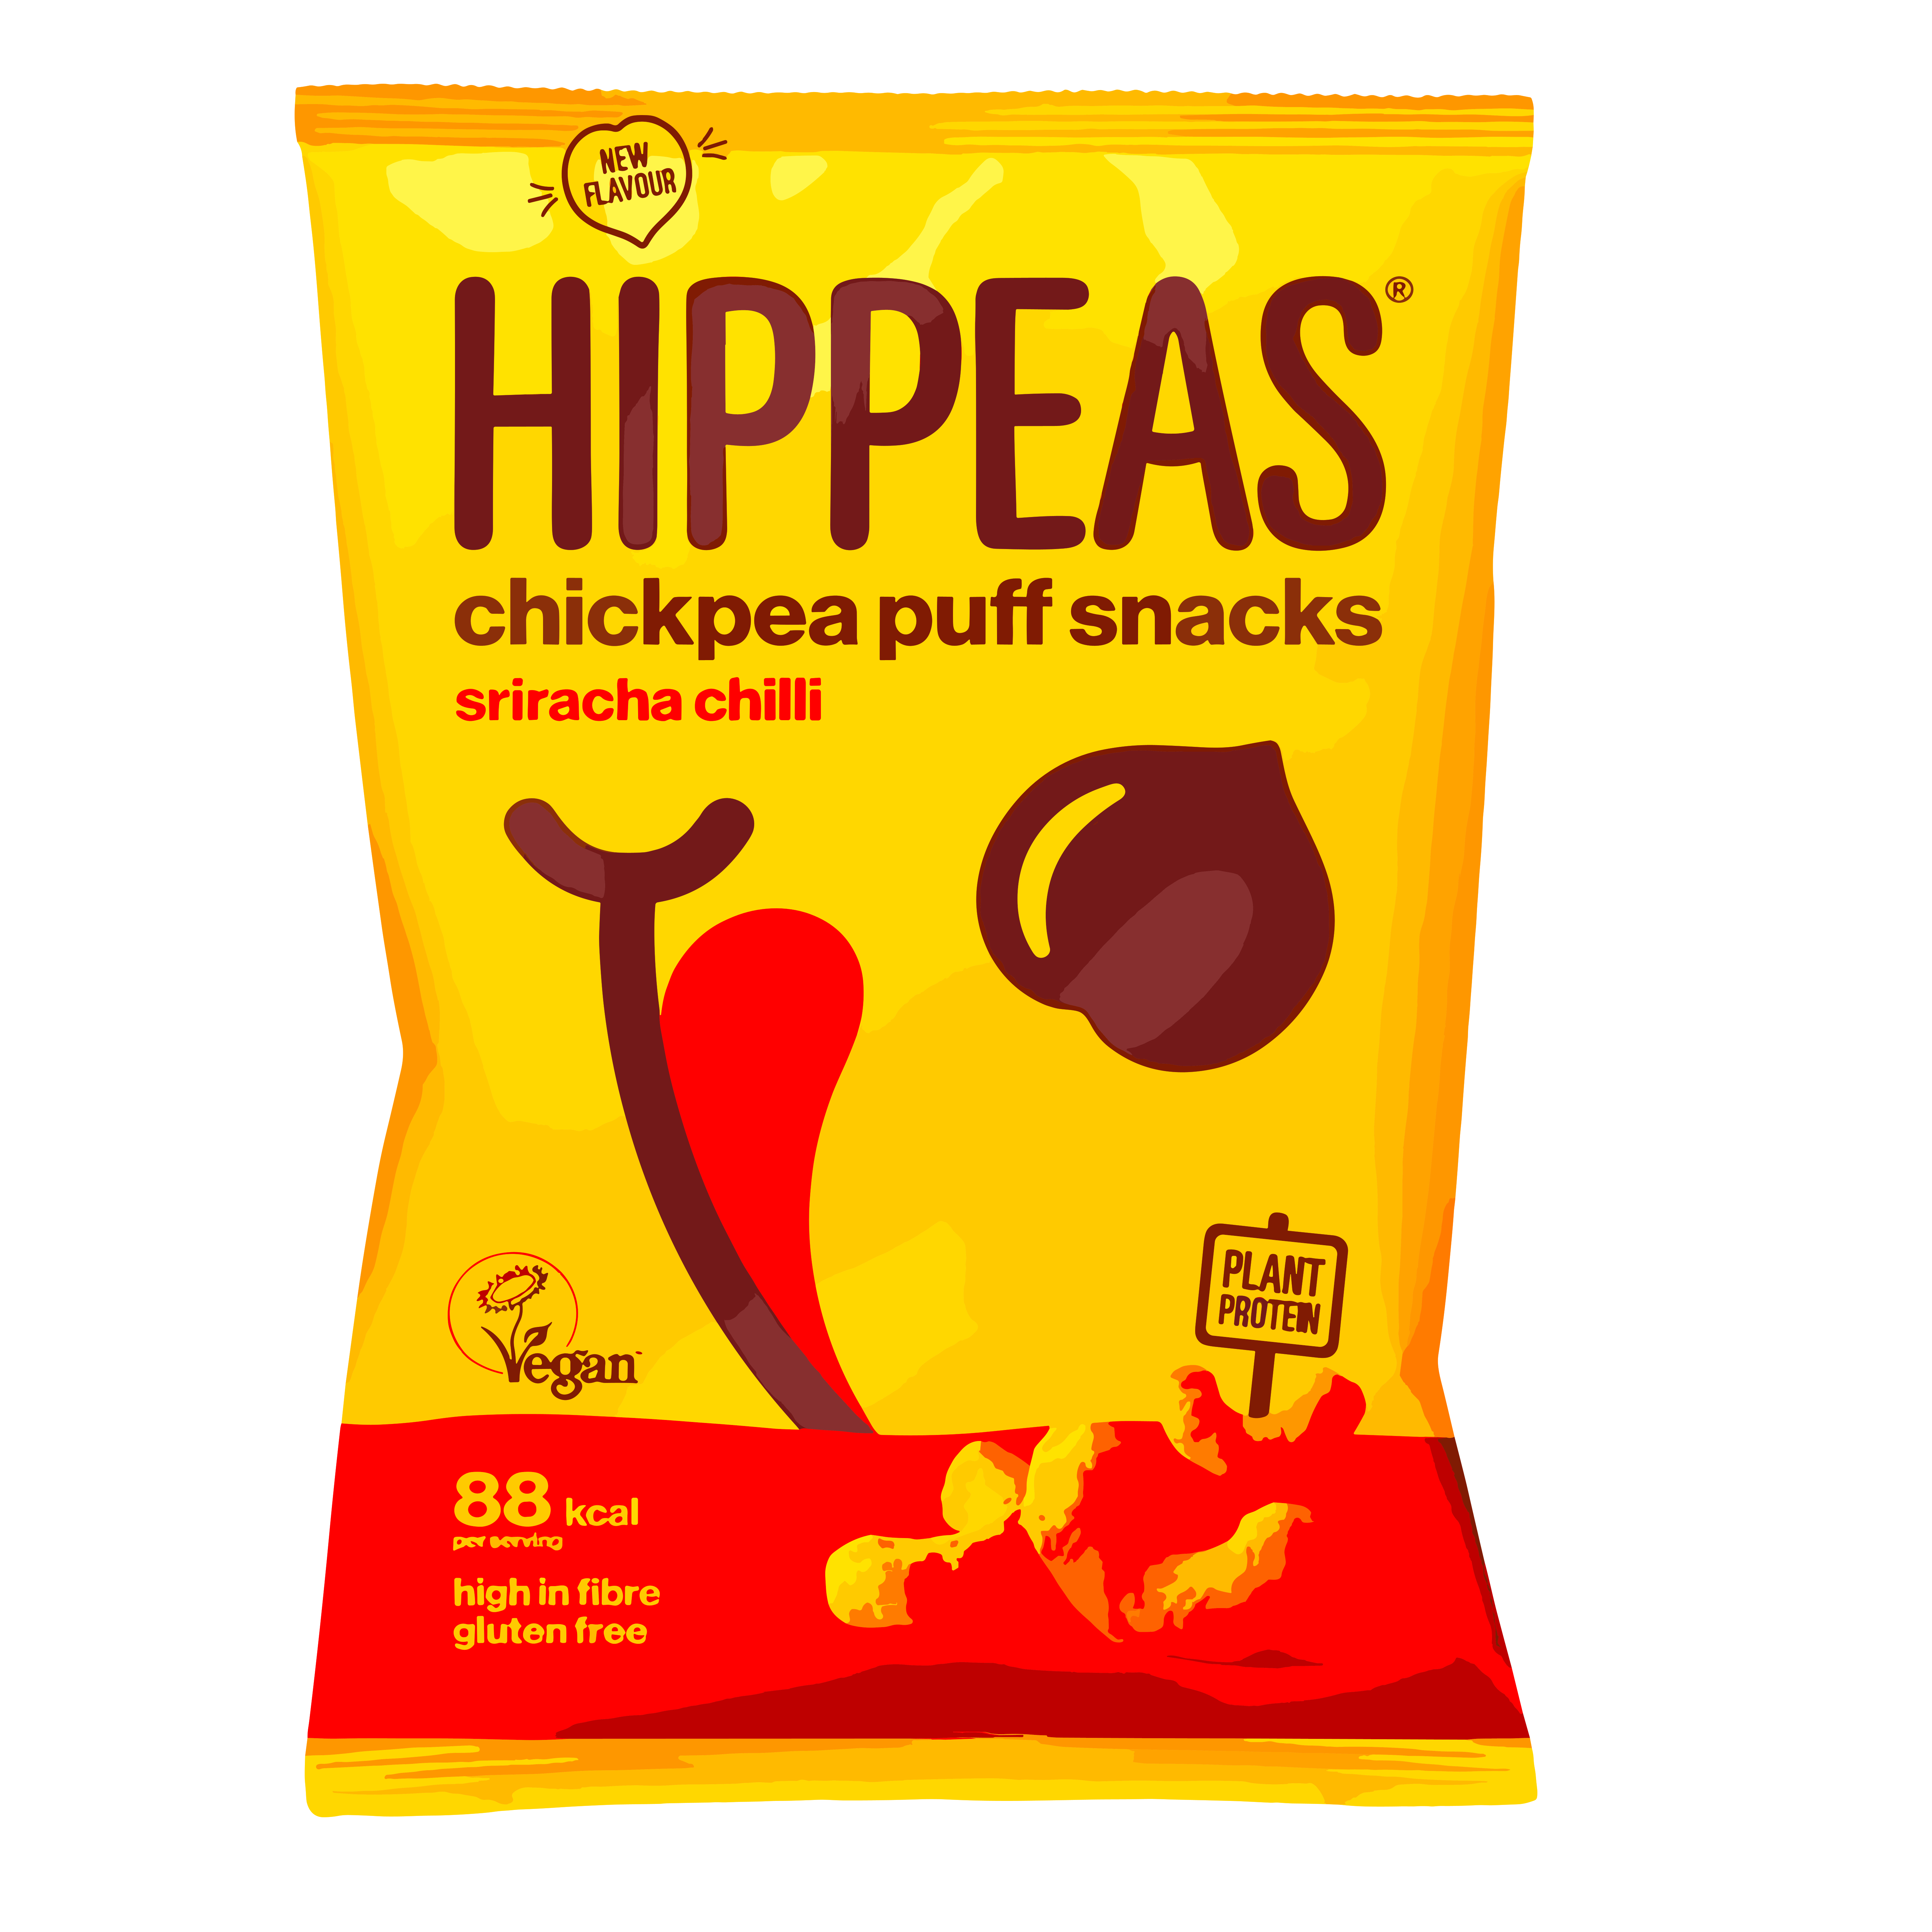 Hippeas Chick pea Puff Snack Sriracha Chilli